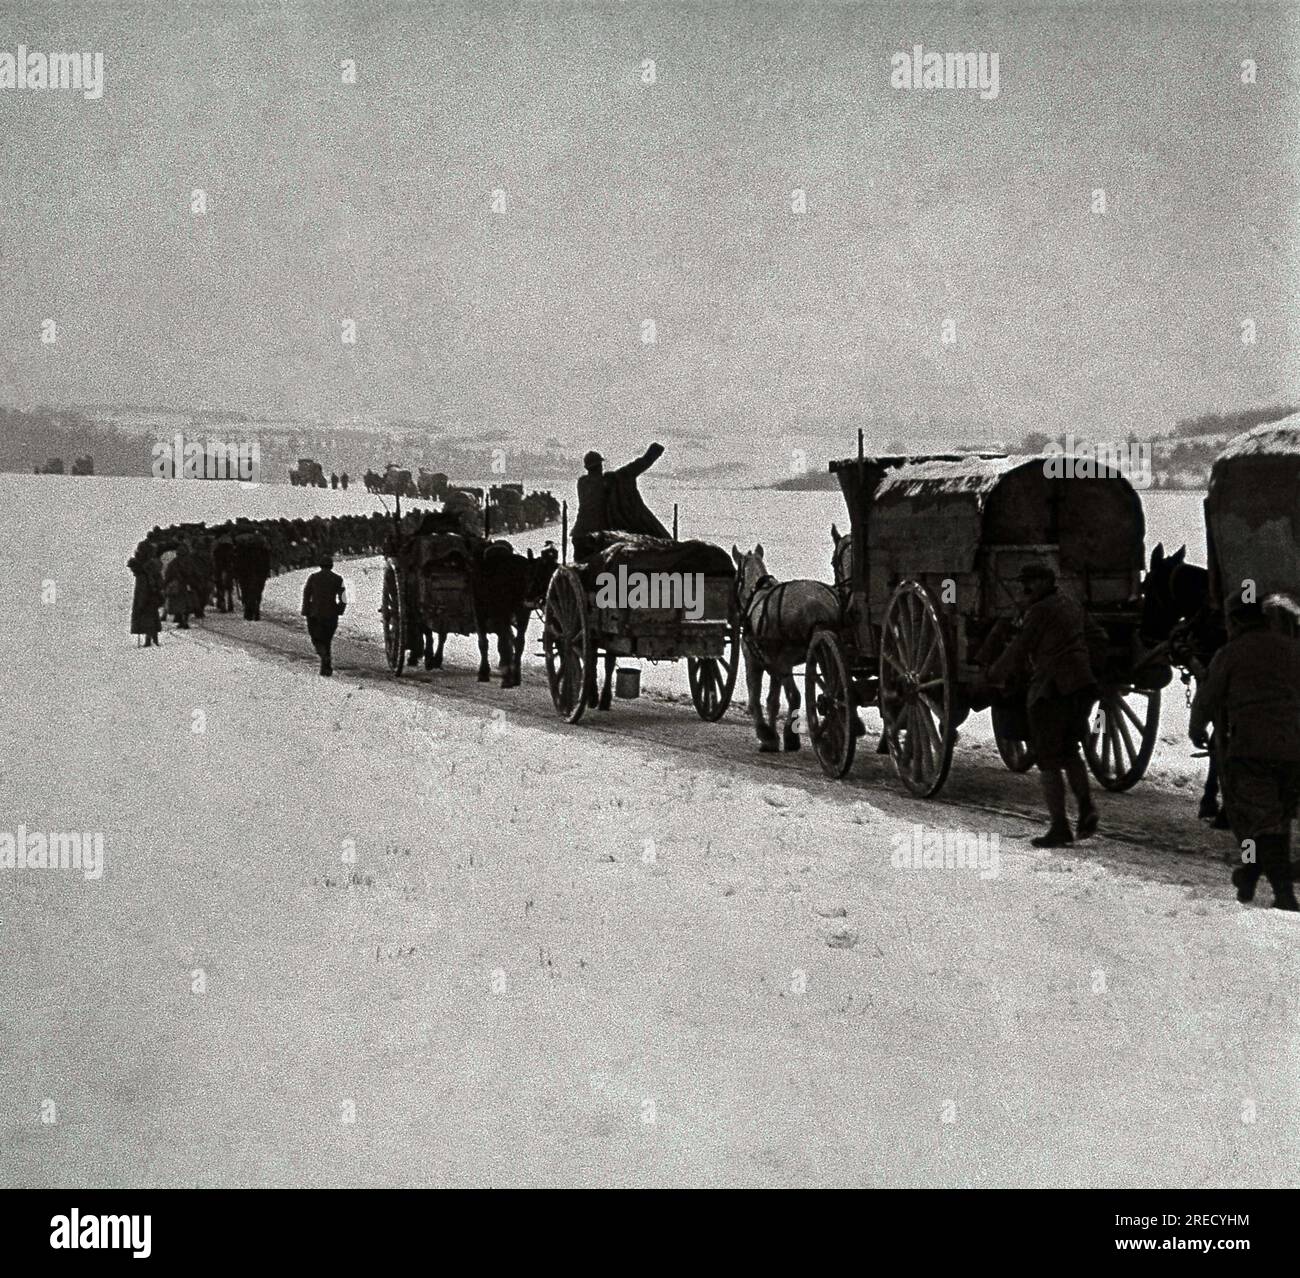 Premiere Guerre Mondiale, convoie de ravitaillement pour l'armee francaise a Verdun, durant l'hiver. Photographie, 1914-1918, Paris. Banque D'Images